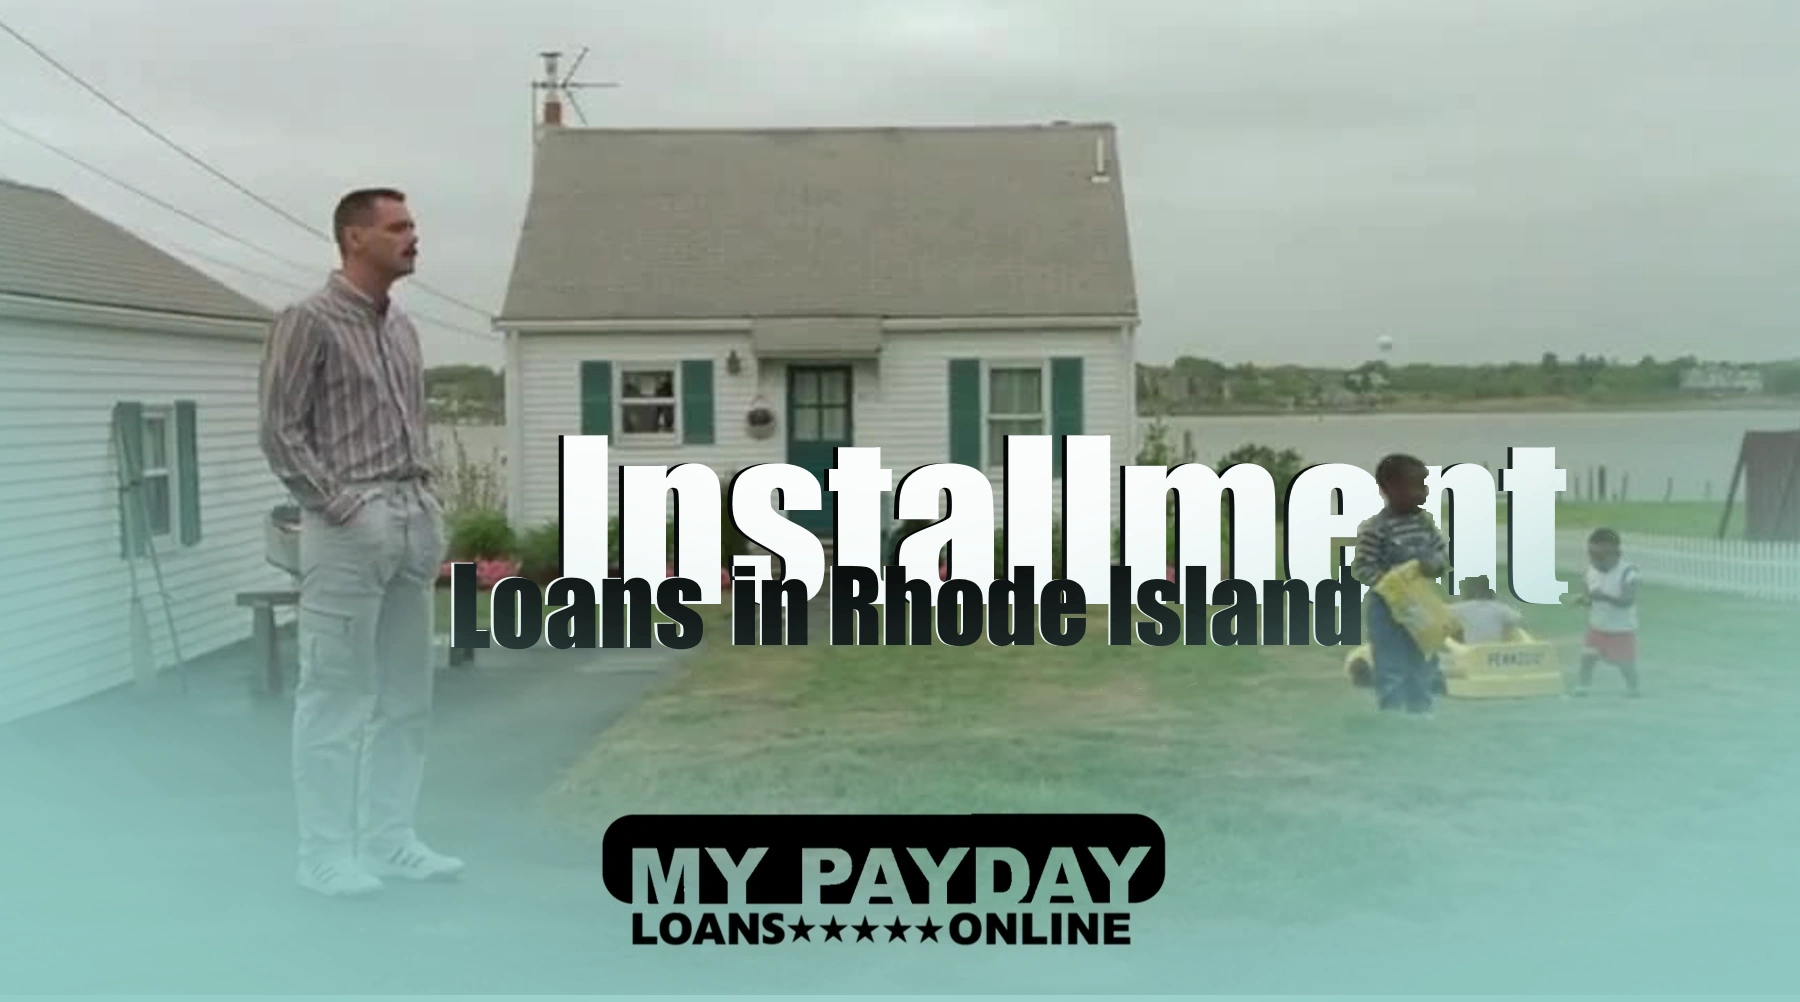 Rhode Island Installment Loans